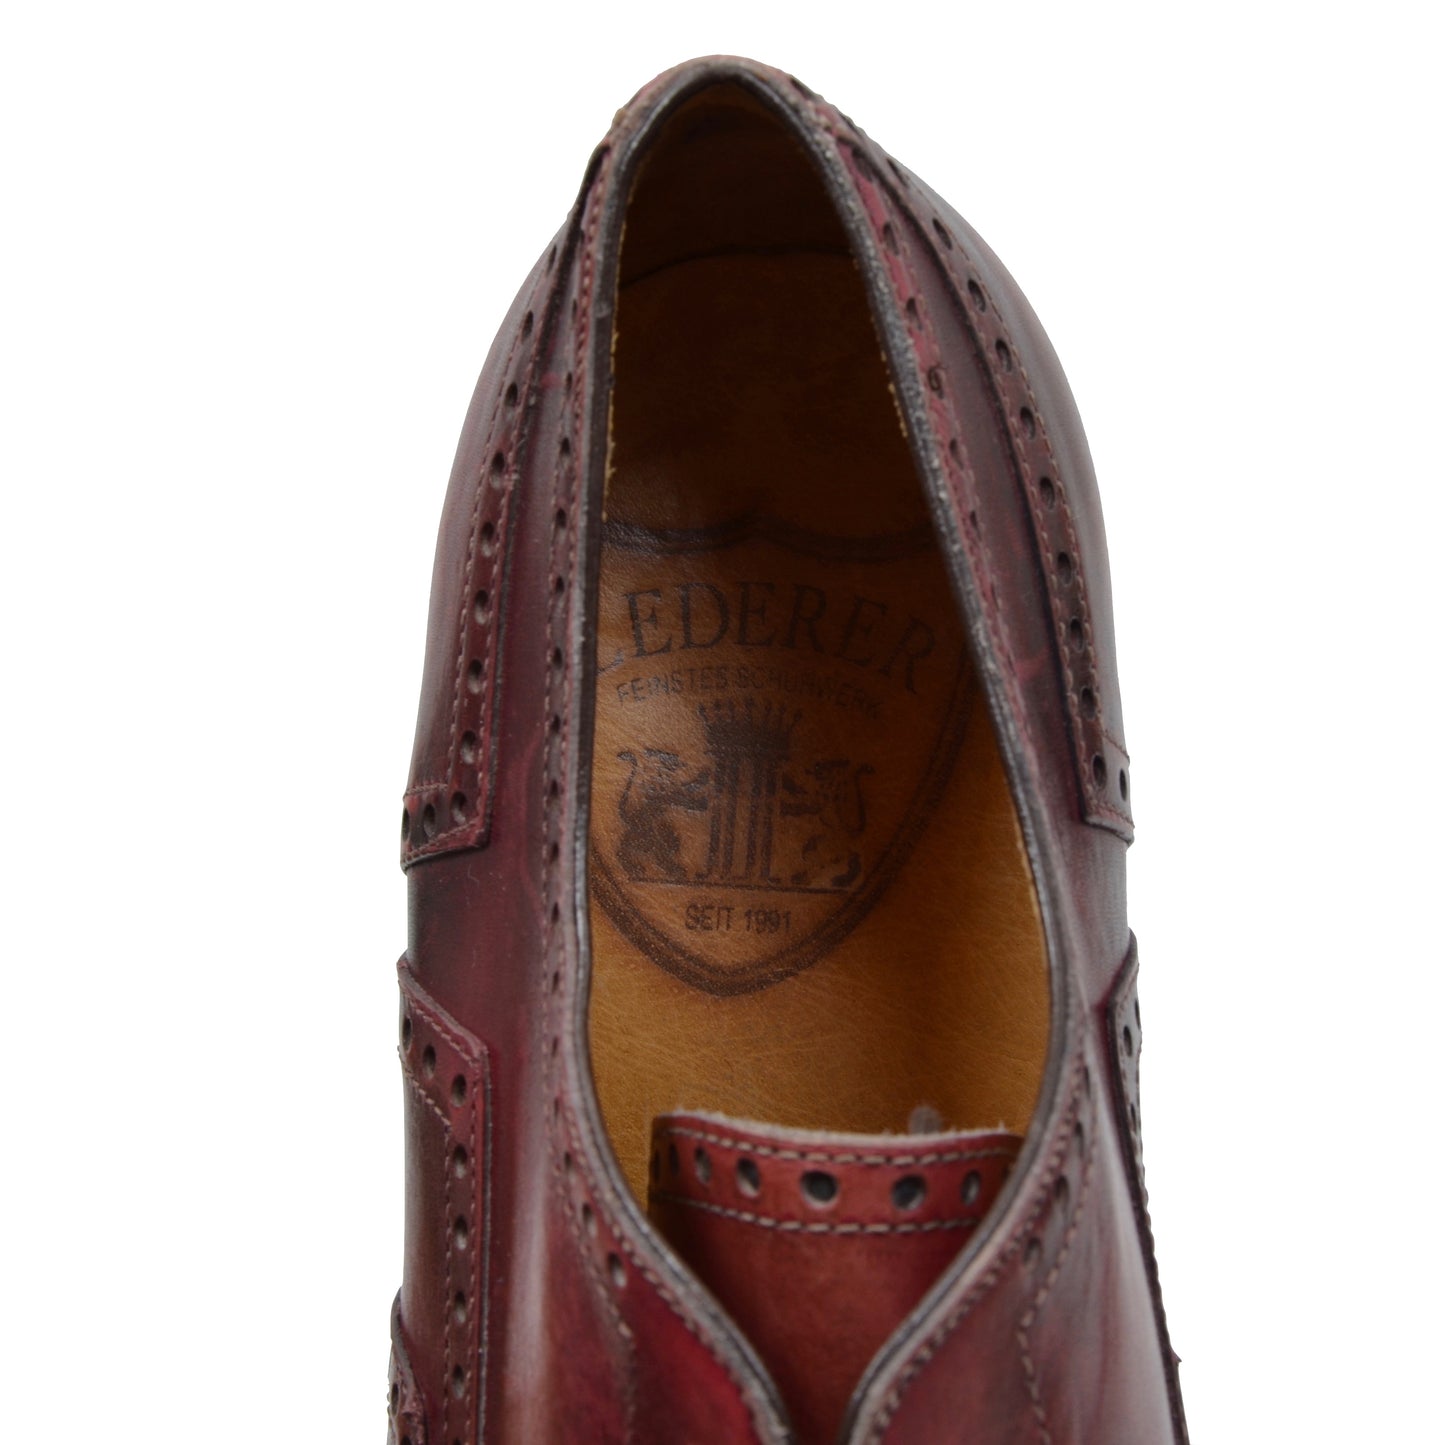 Lederer Oxford Shoes Size 41 - Burgundy